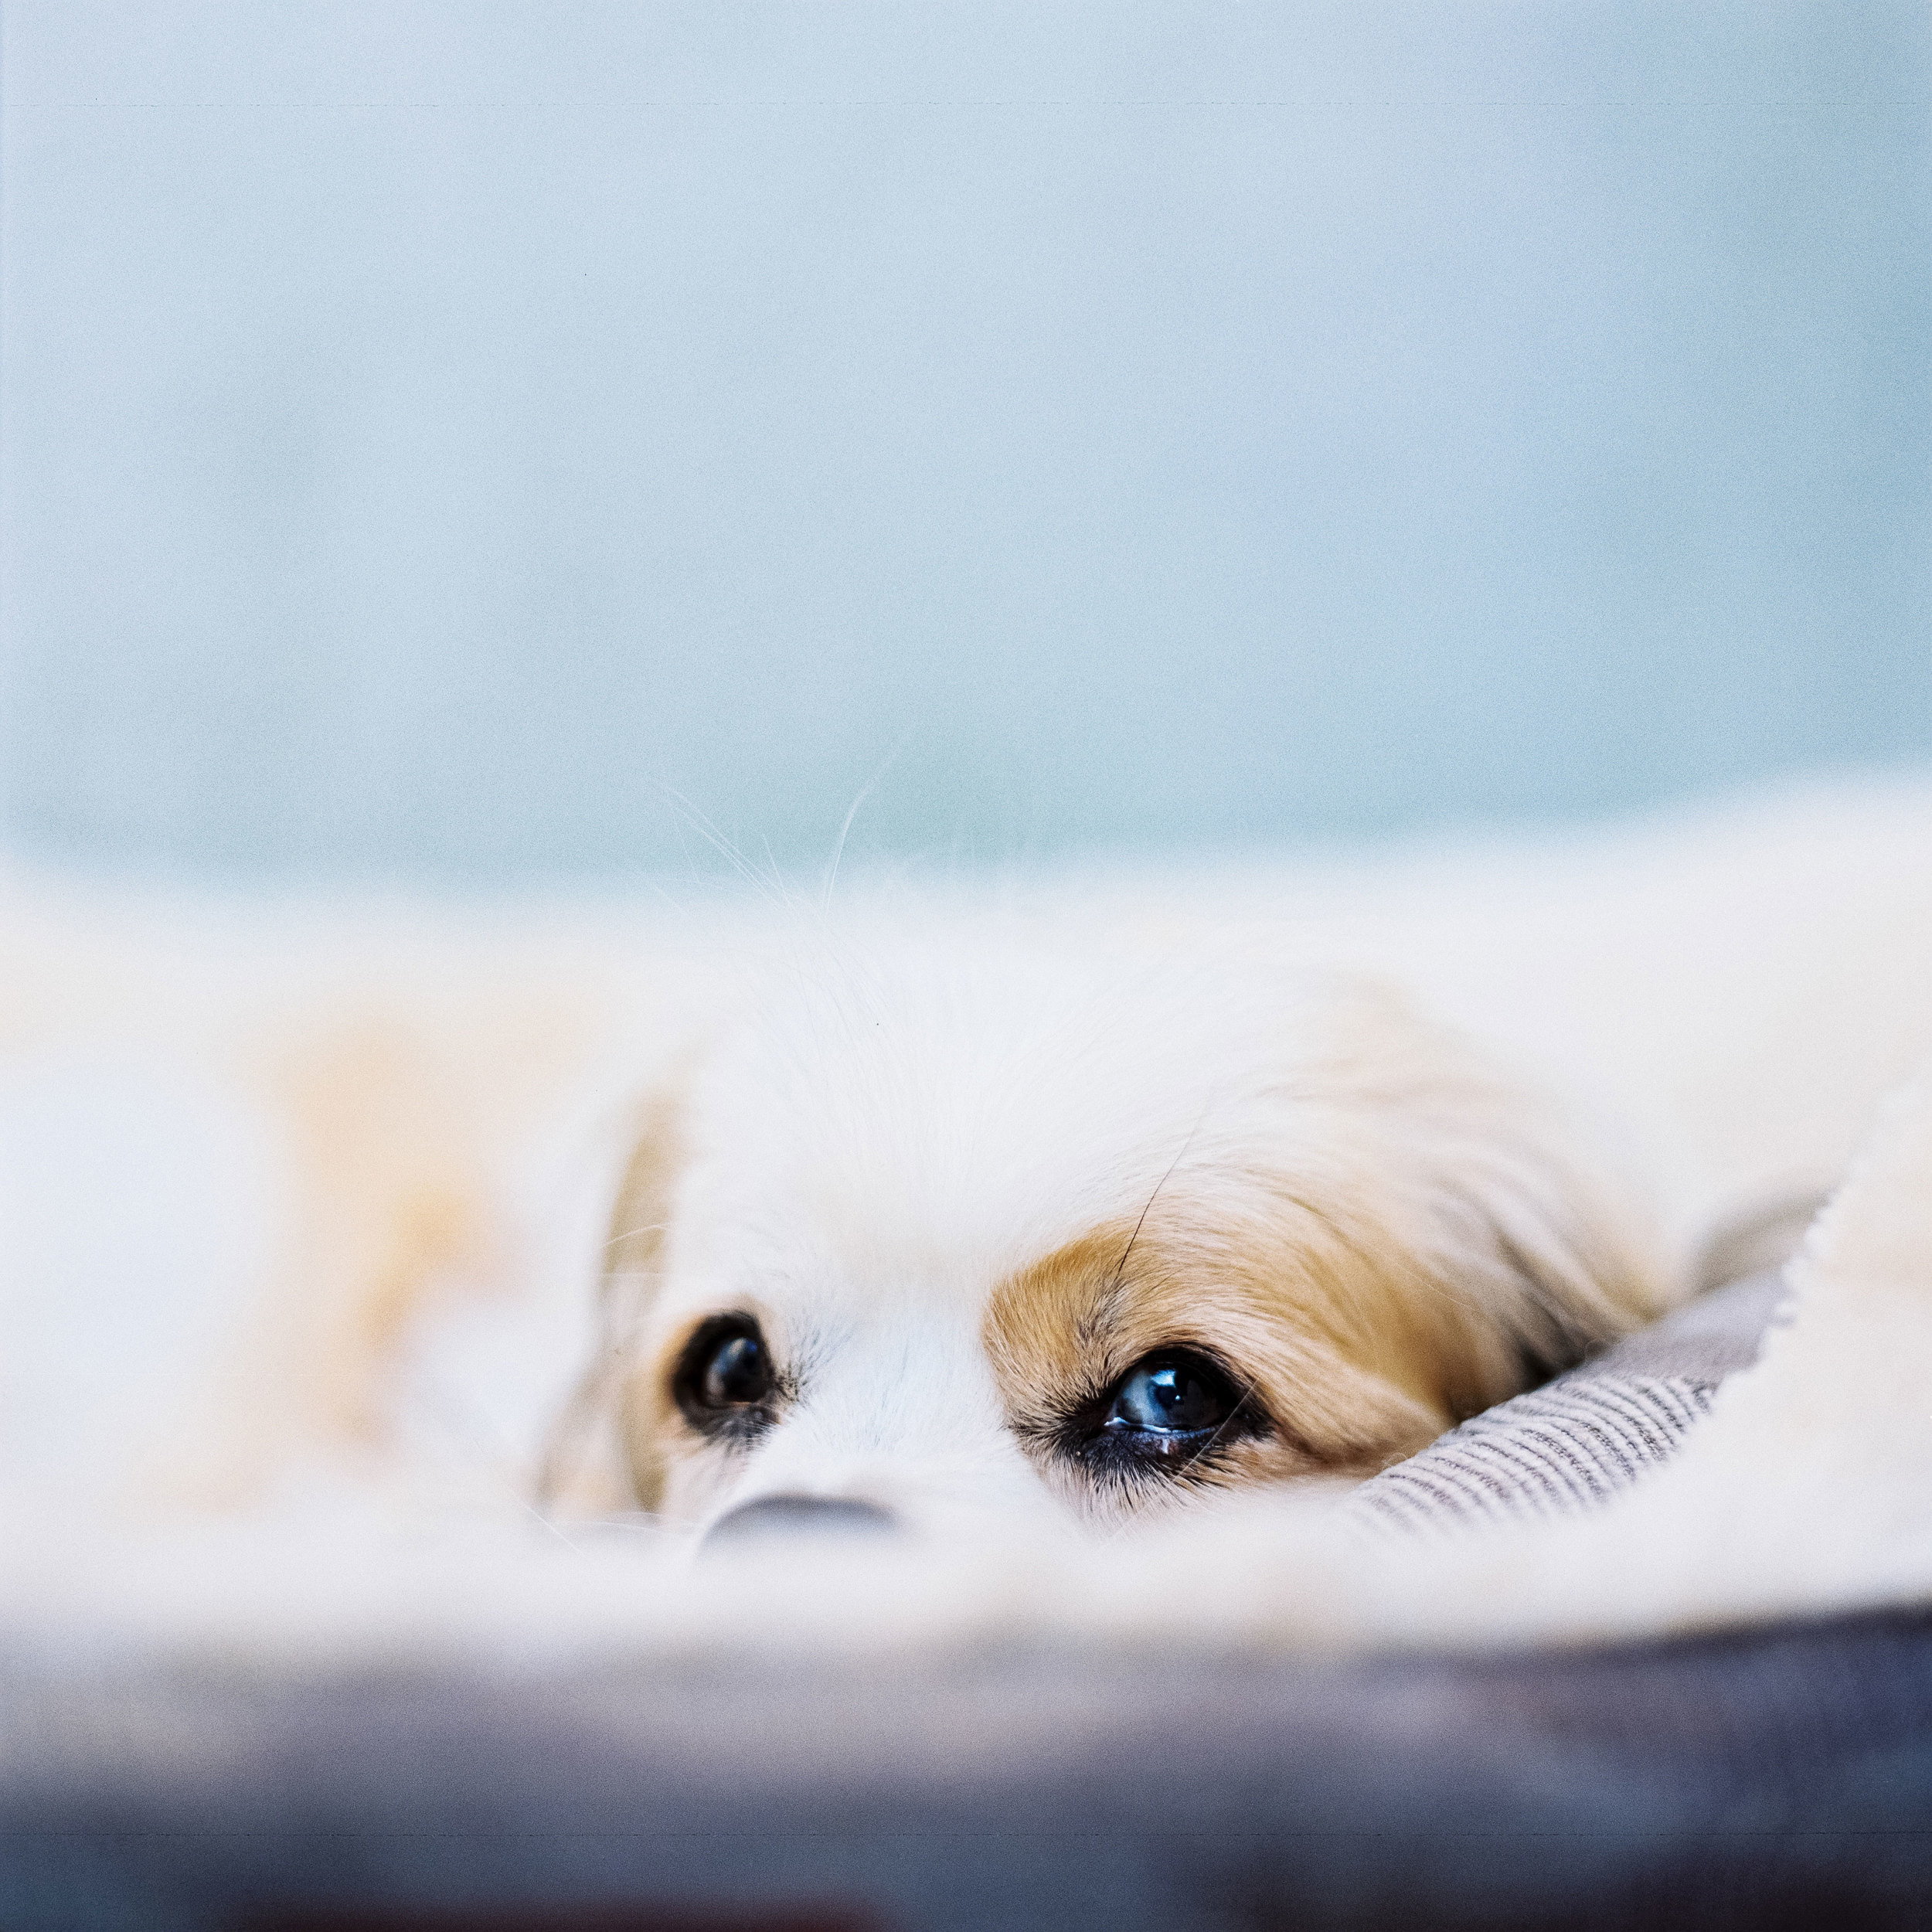 Nils Karlson | A senior's puppy eyes | RZ67 | 110mm | Portra 800